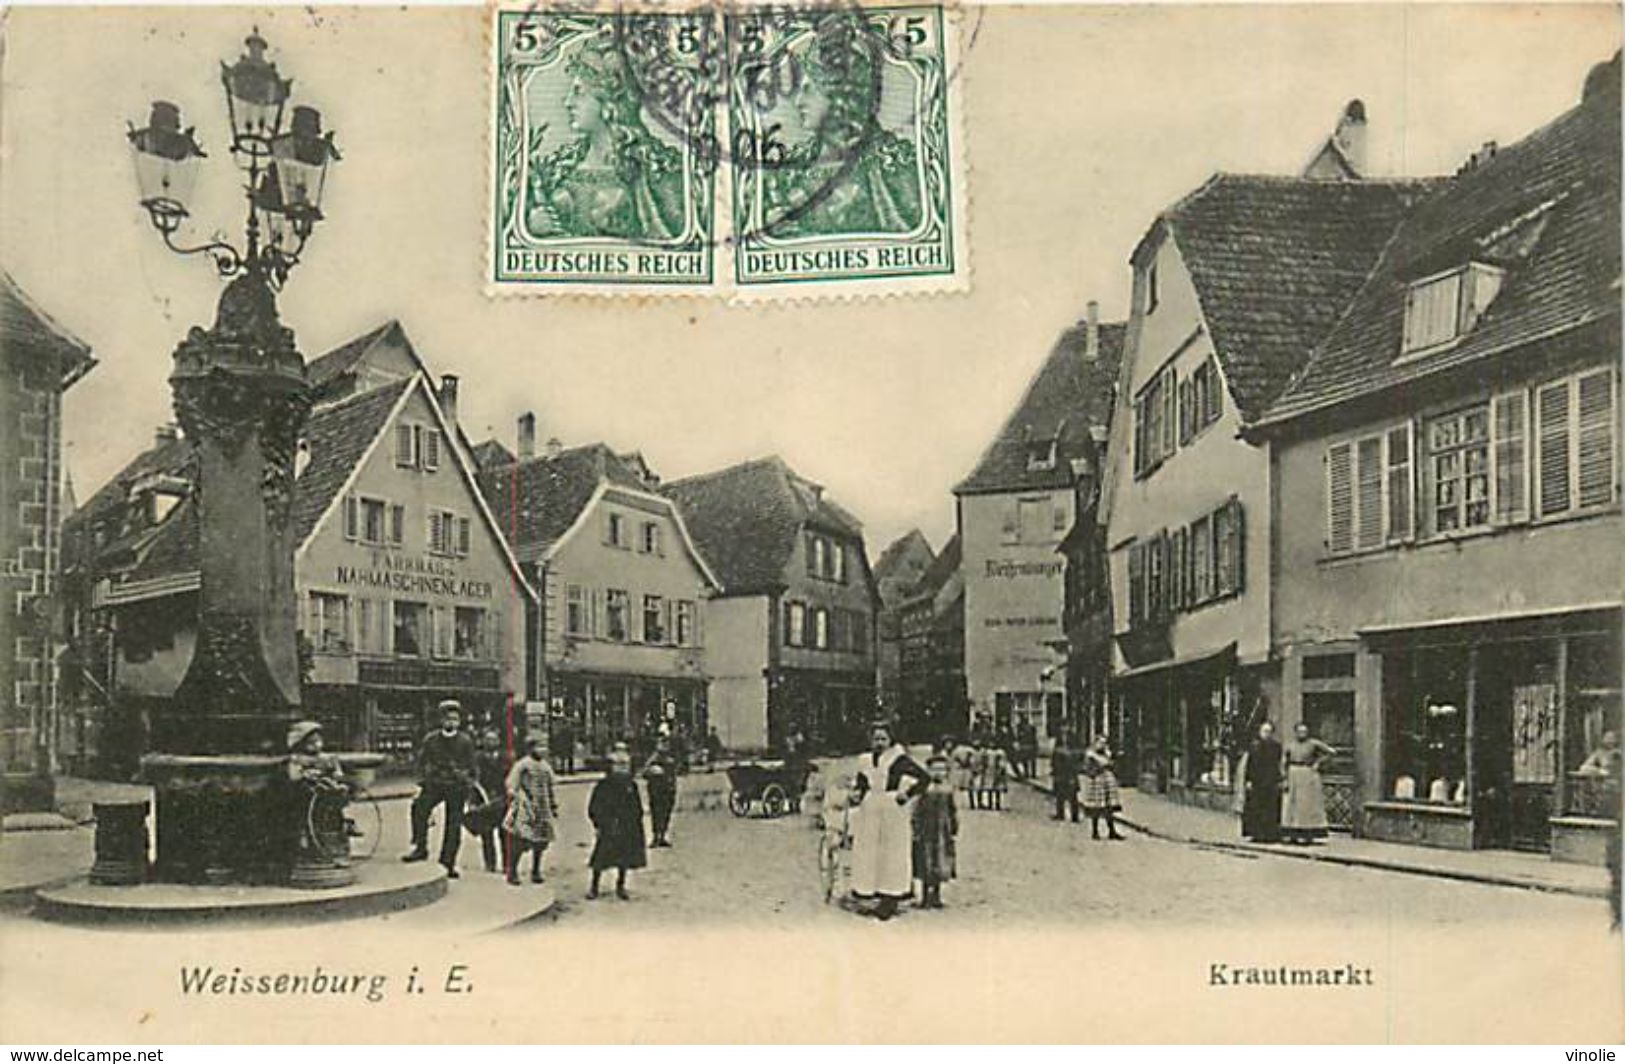 A-17.6819 : WEISSENBURG I. E.   KRAUTMARKT - Weissenburg